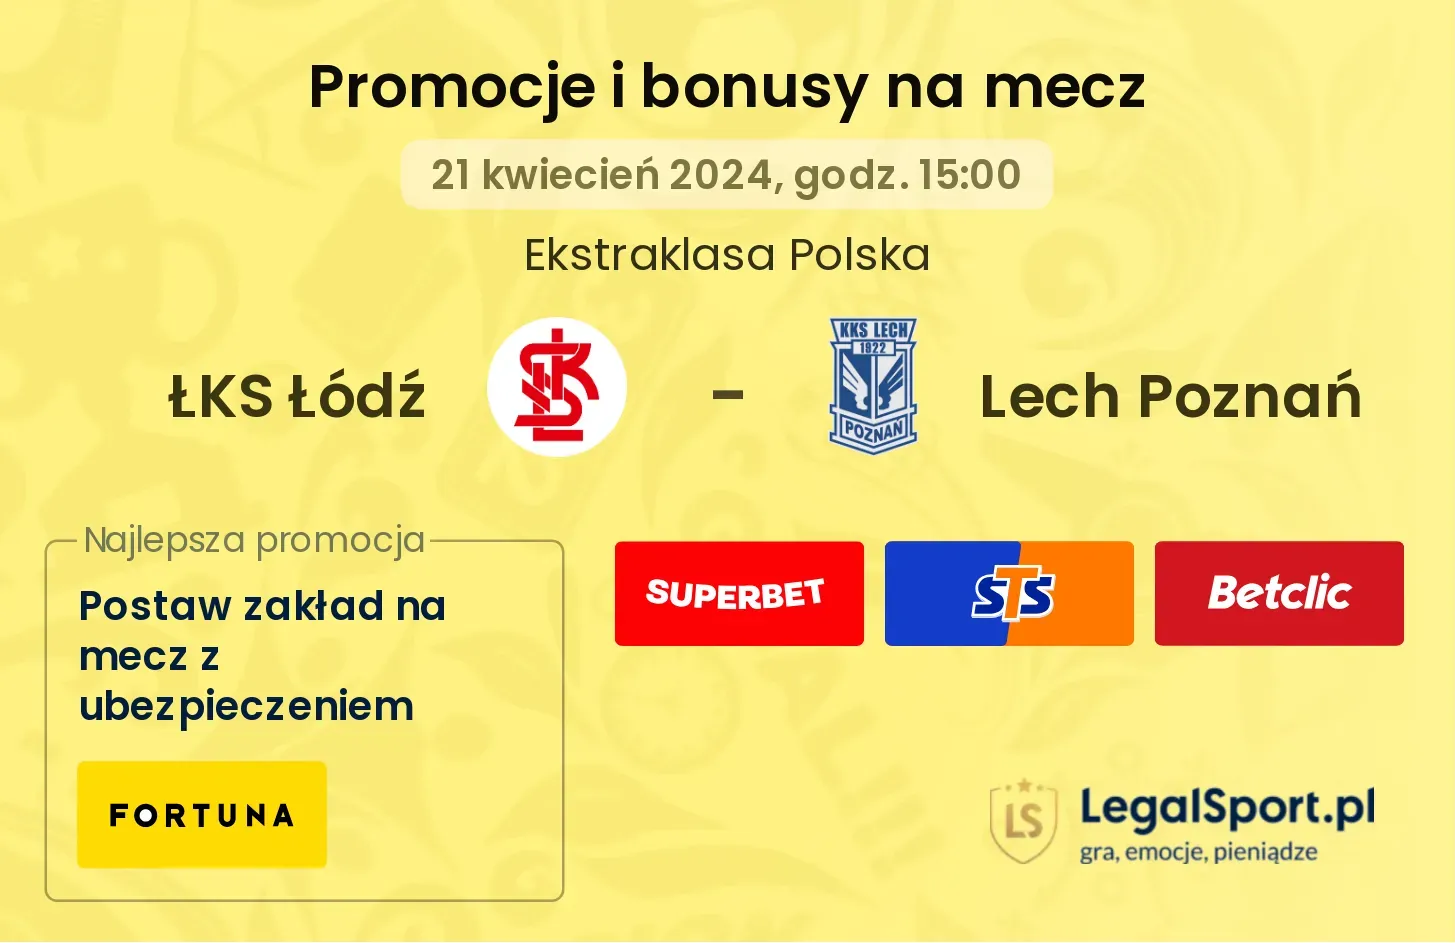 ŁKS Łódź - Lech Poznań promocje bonusy na mecz